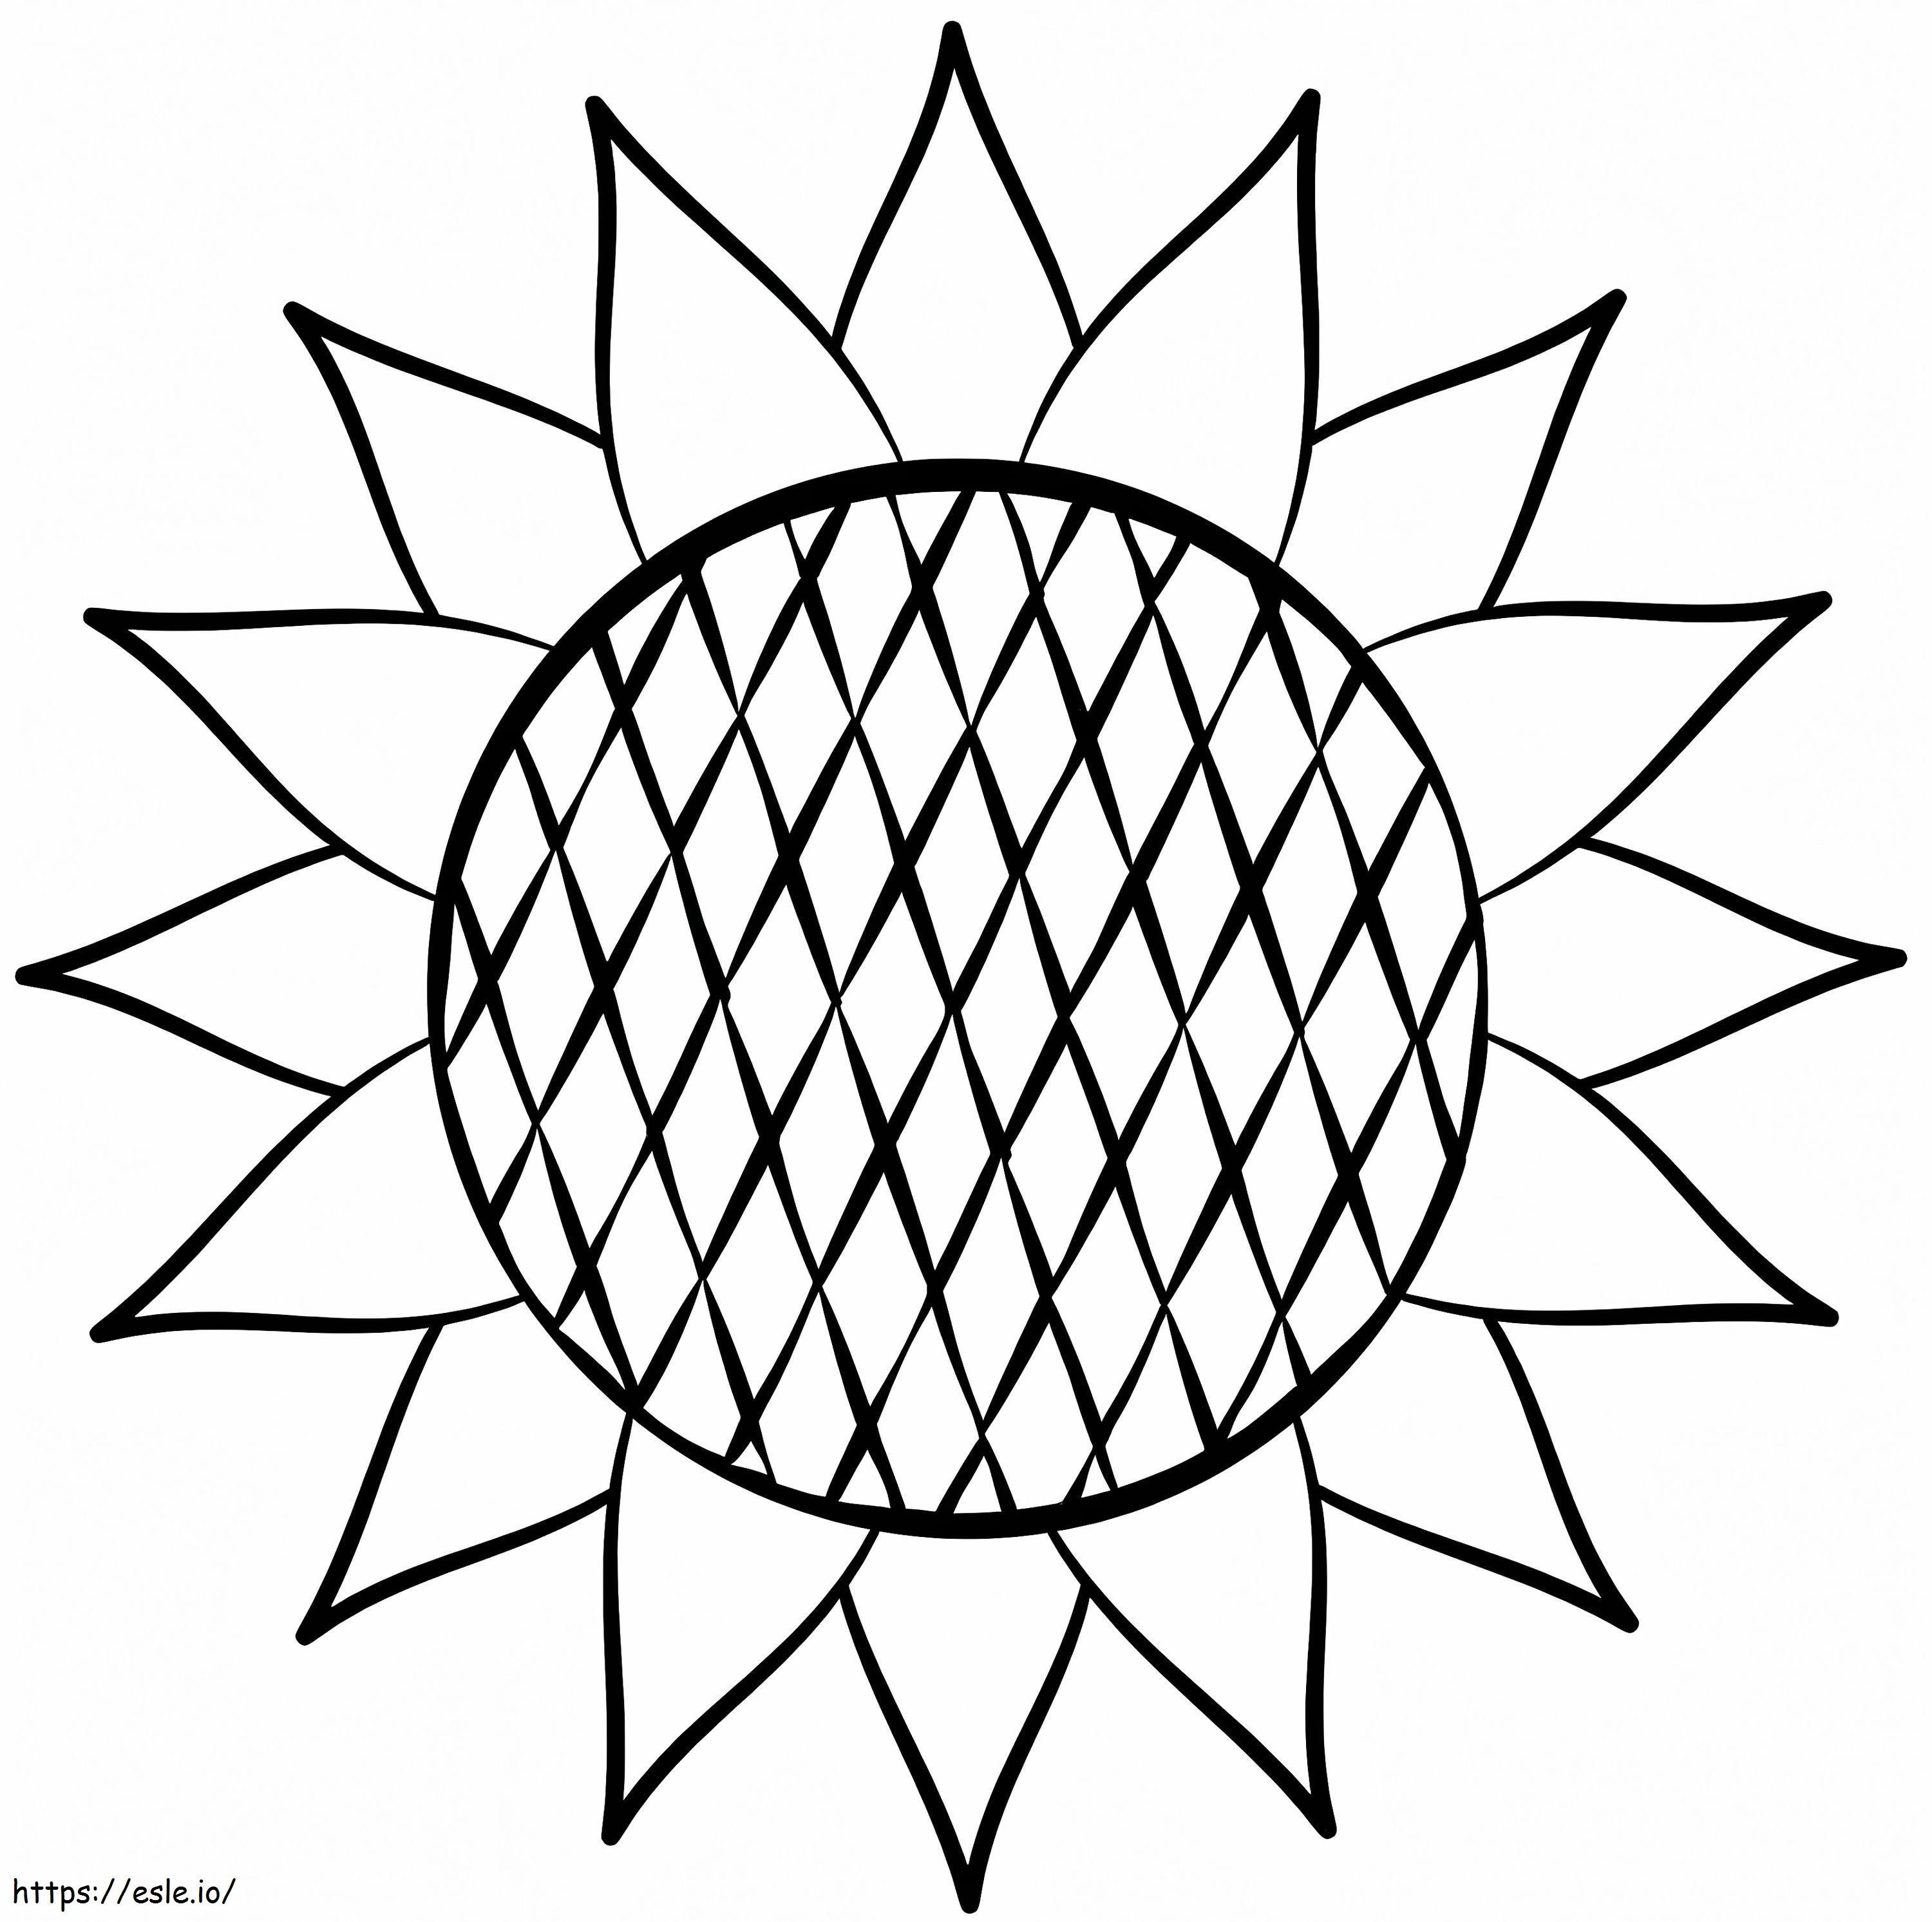 Einfache Sonnenblume ausmalbilder